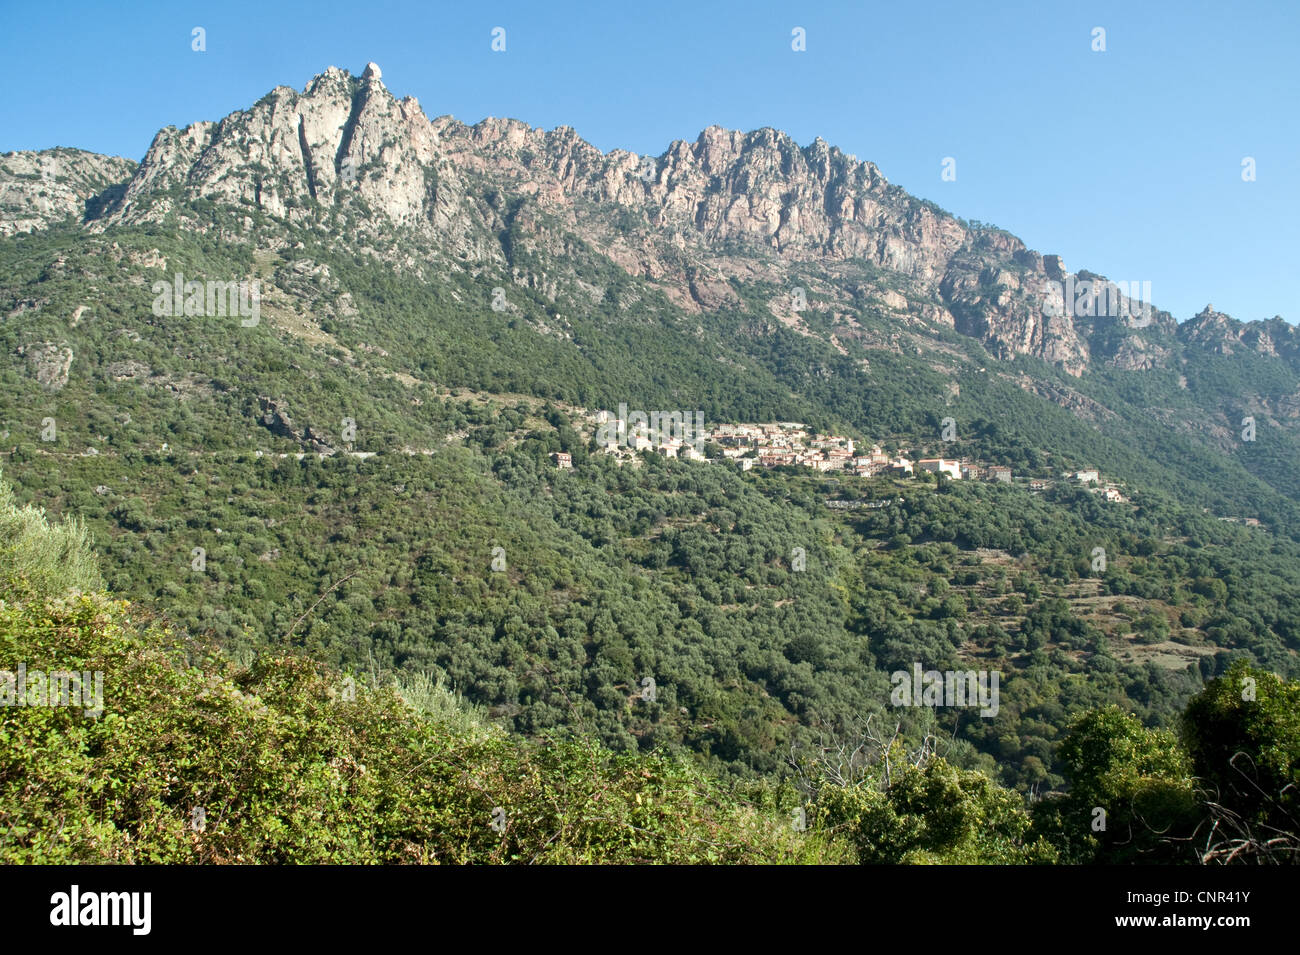 Blick auf das korsische Bergdorf Ota und den umliegenden Eichenwald, an der Westküste der Insel Korsika, Frankreich. Stockfoto